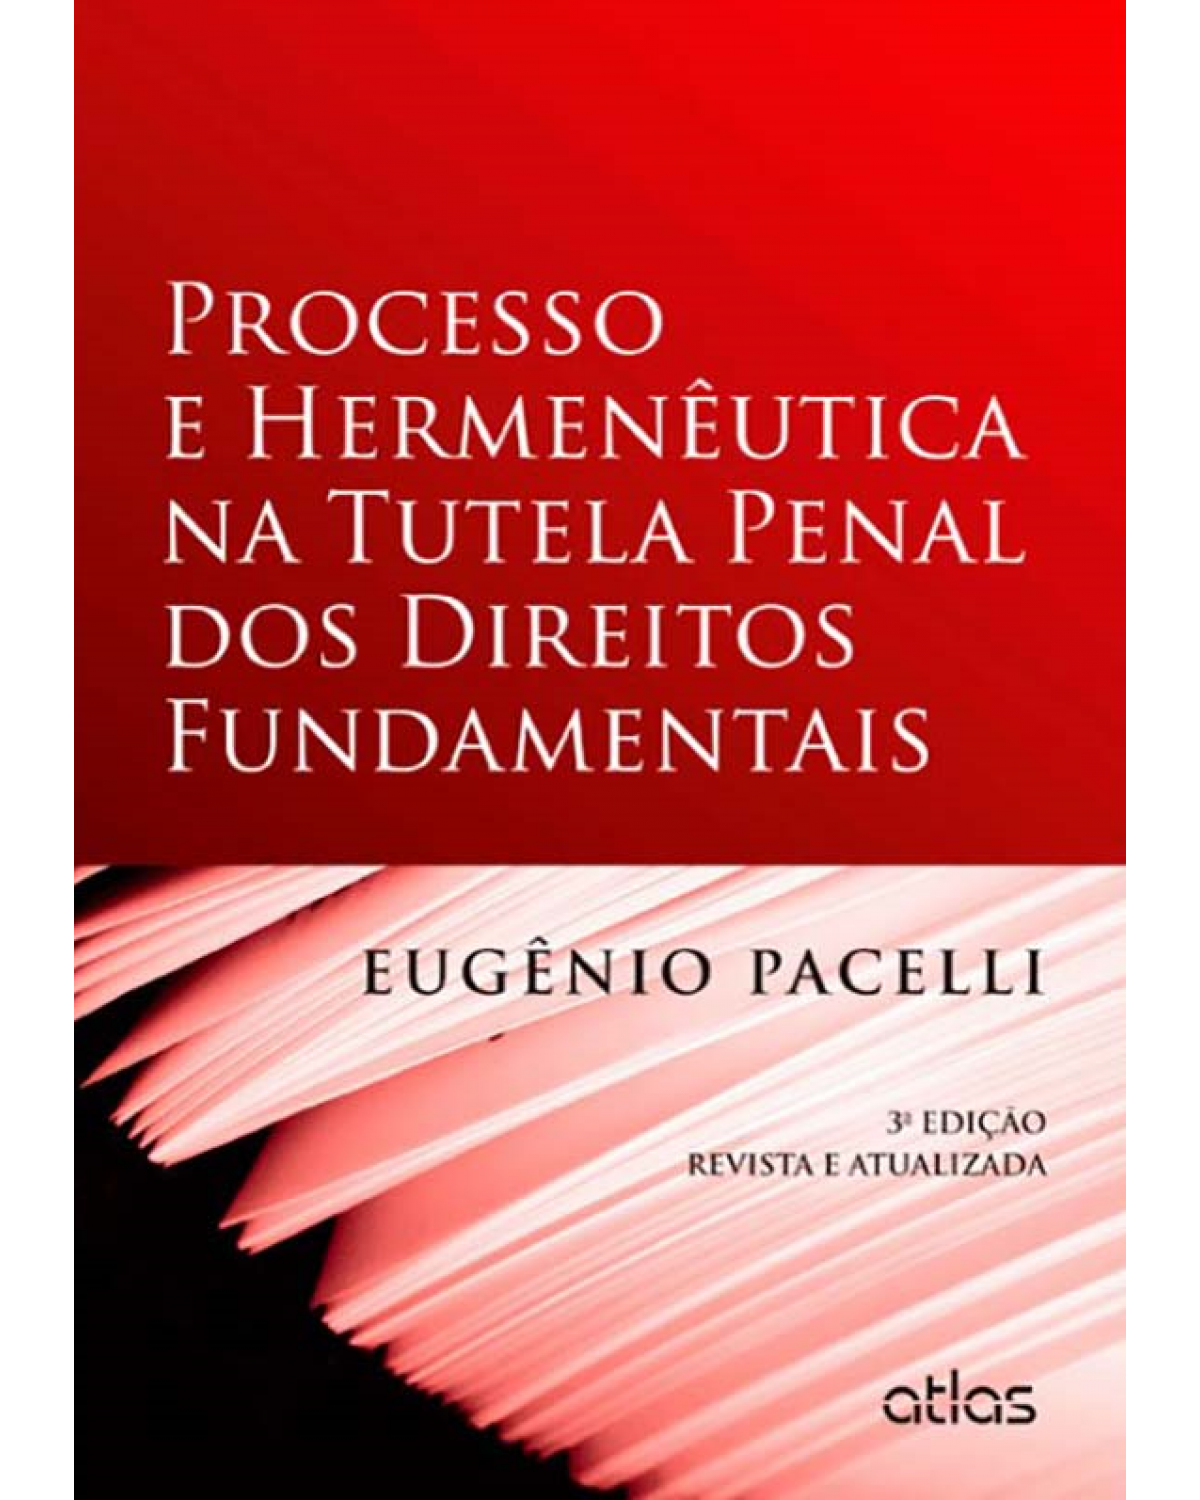 Processo e hermenêutica na tutela penal dos direitos fundamentais - 3ª Edição | 2012